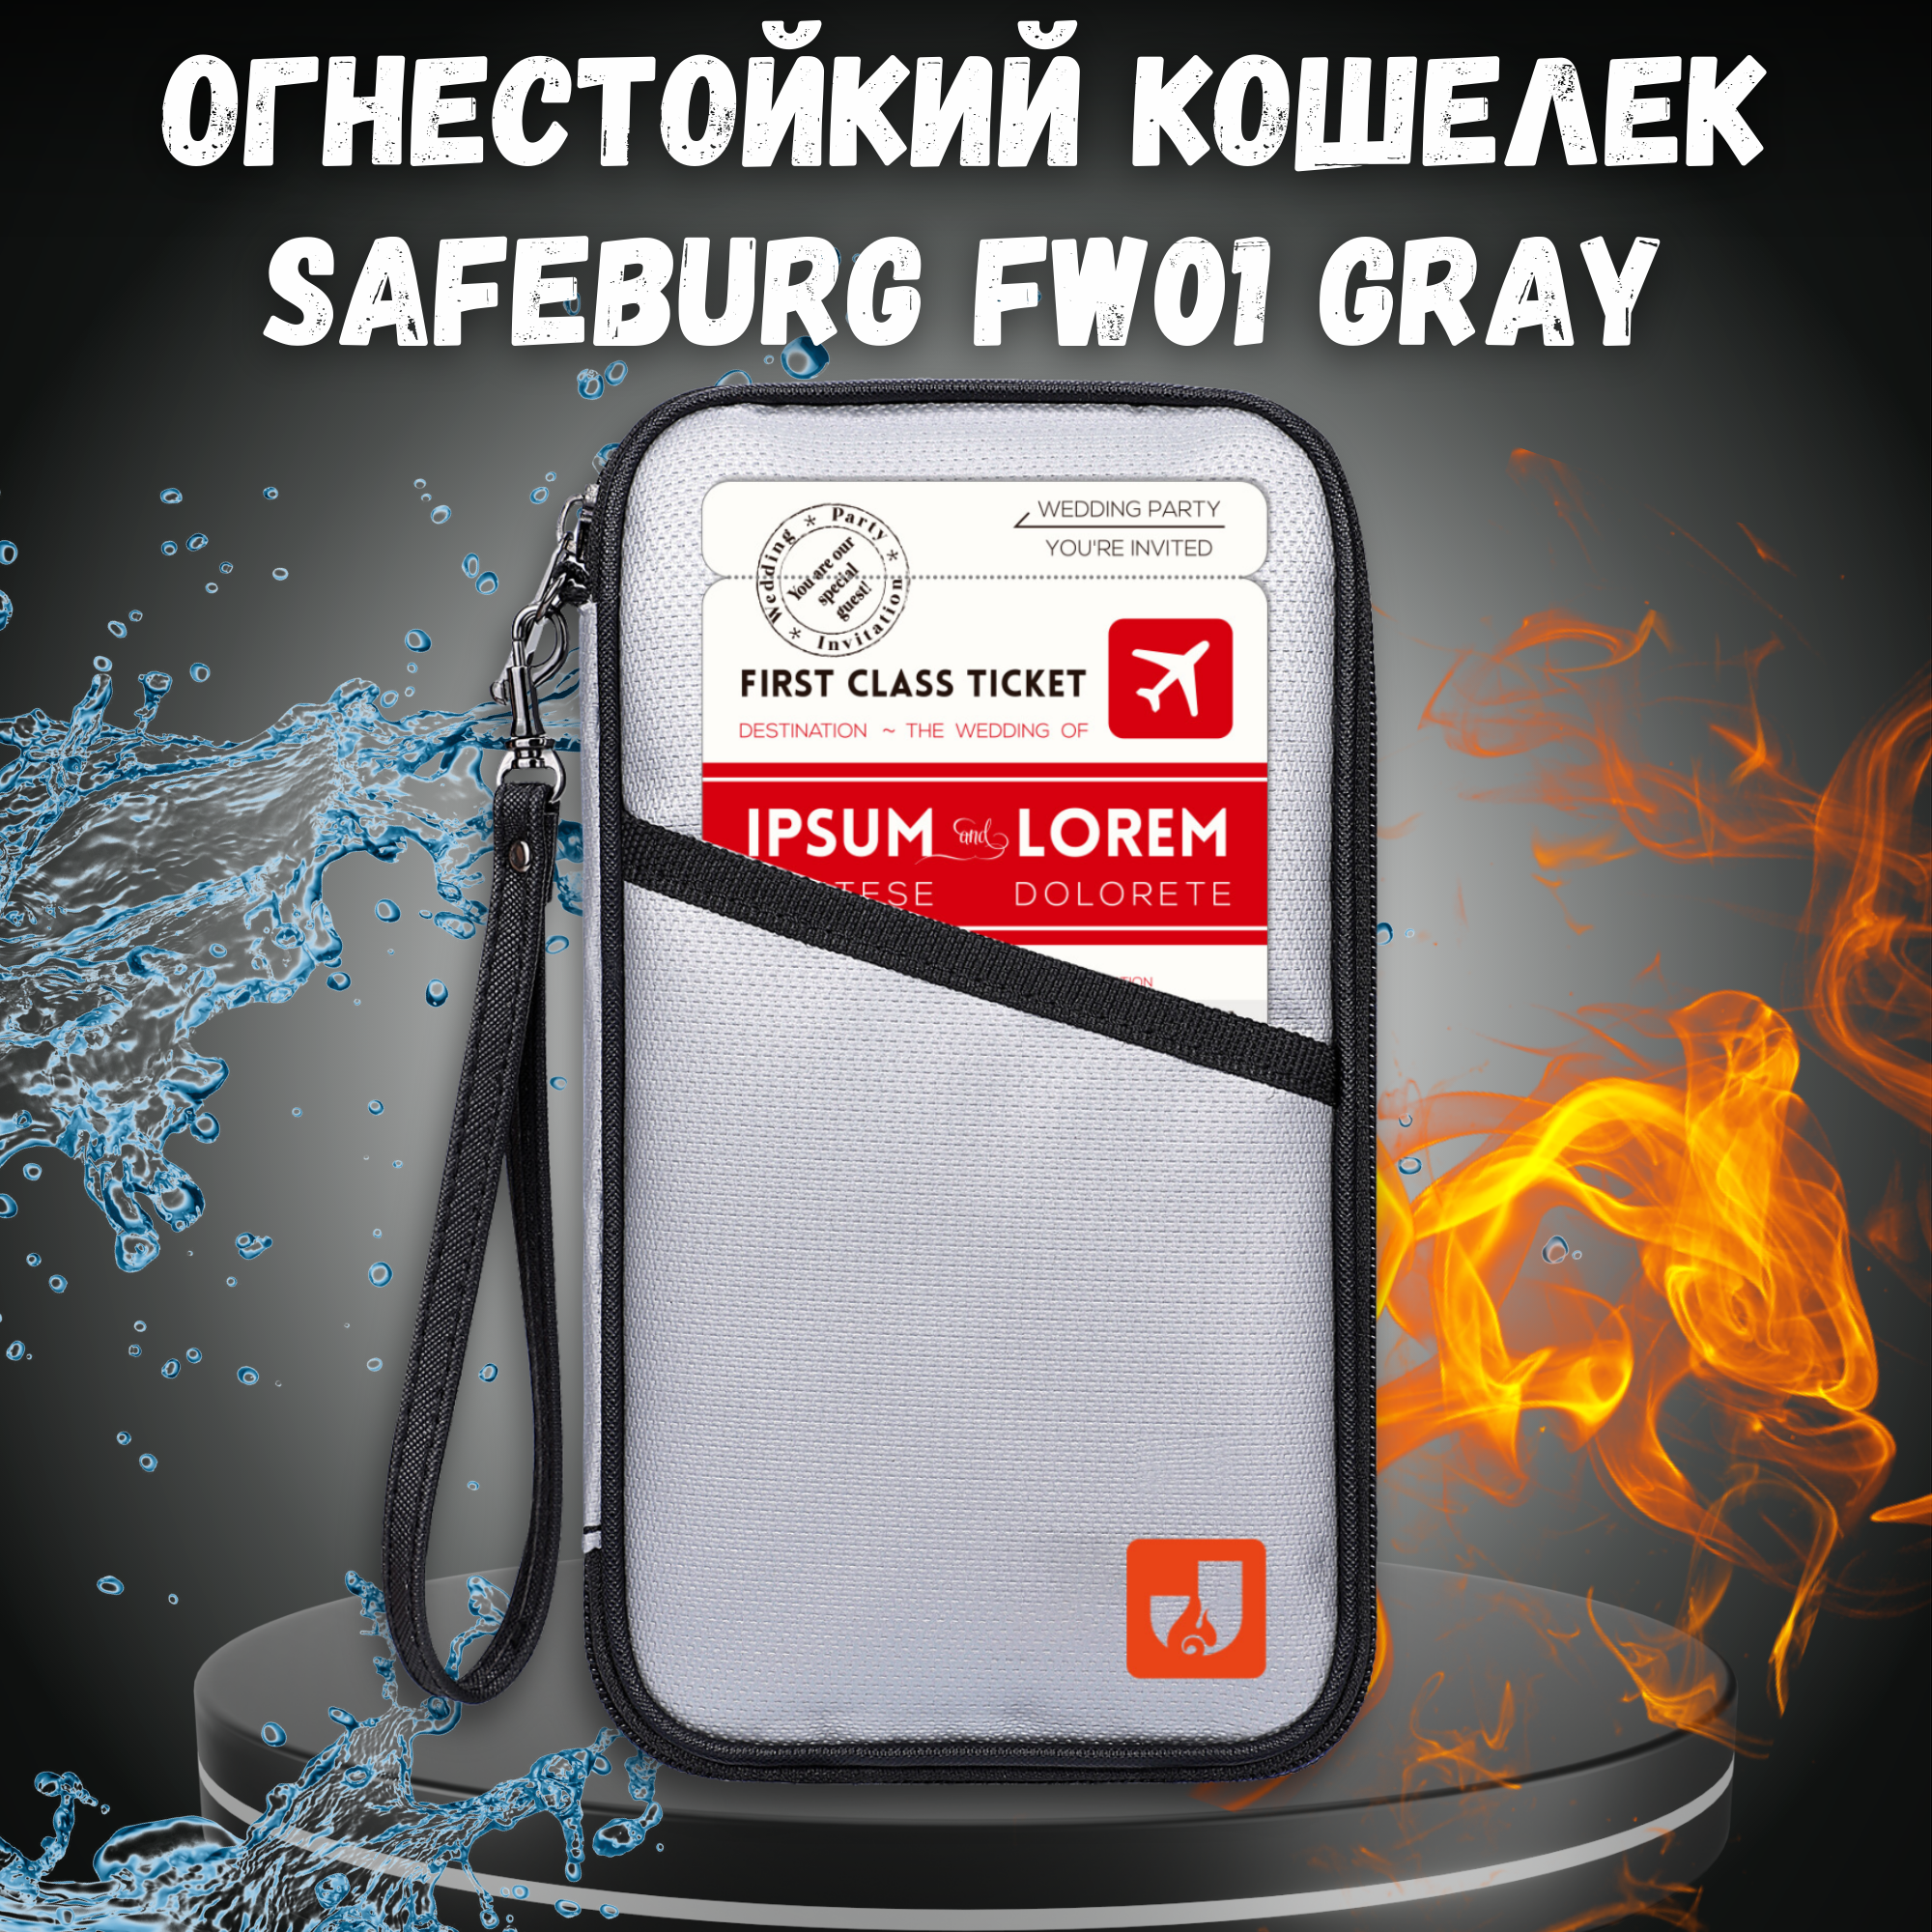 Кошелек огнестойки SAFEBURG FW01 GRAY влагостойкий органайзер для денег и документов унисекс портмоне для женщин и мужчин